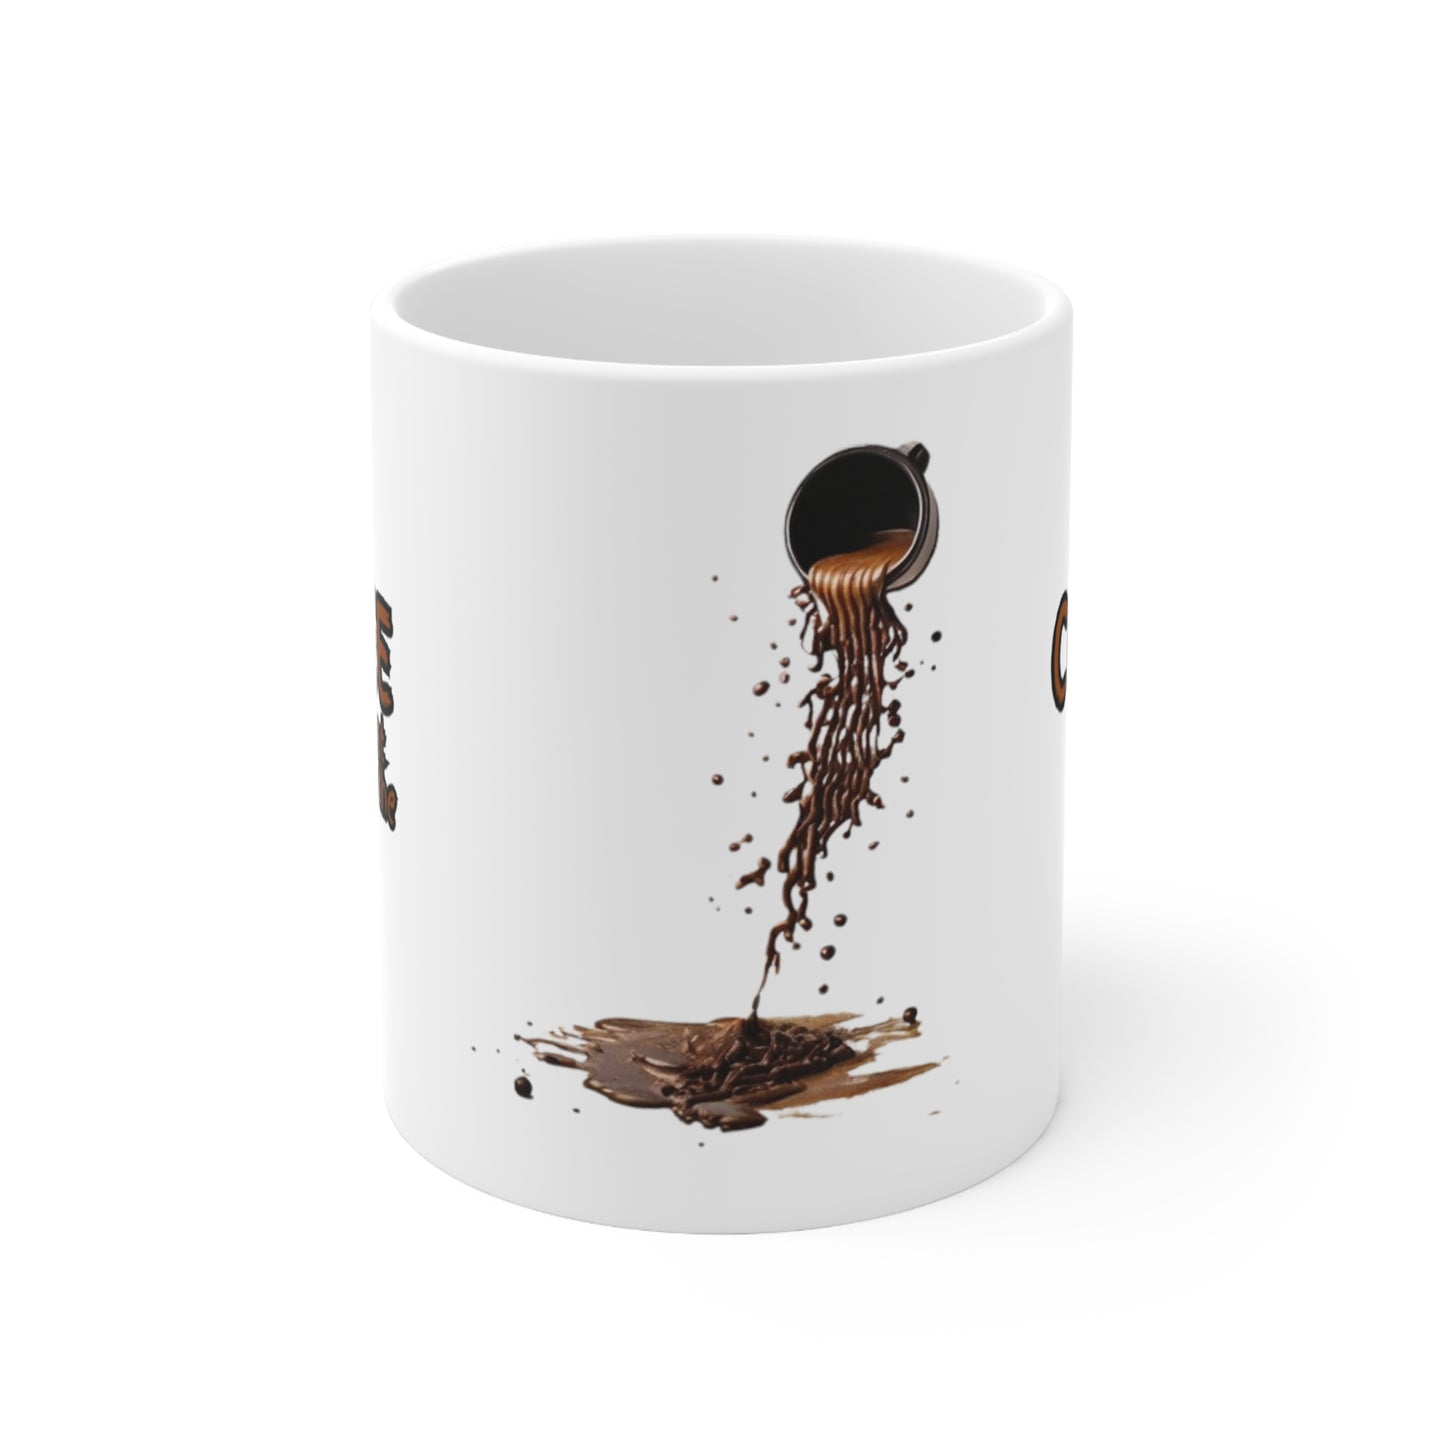 Coffee Is My Best Friend In The Morning Mug - Ceramic Coffee Mug 11oz